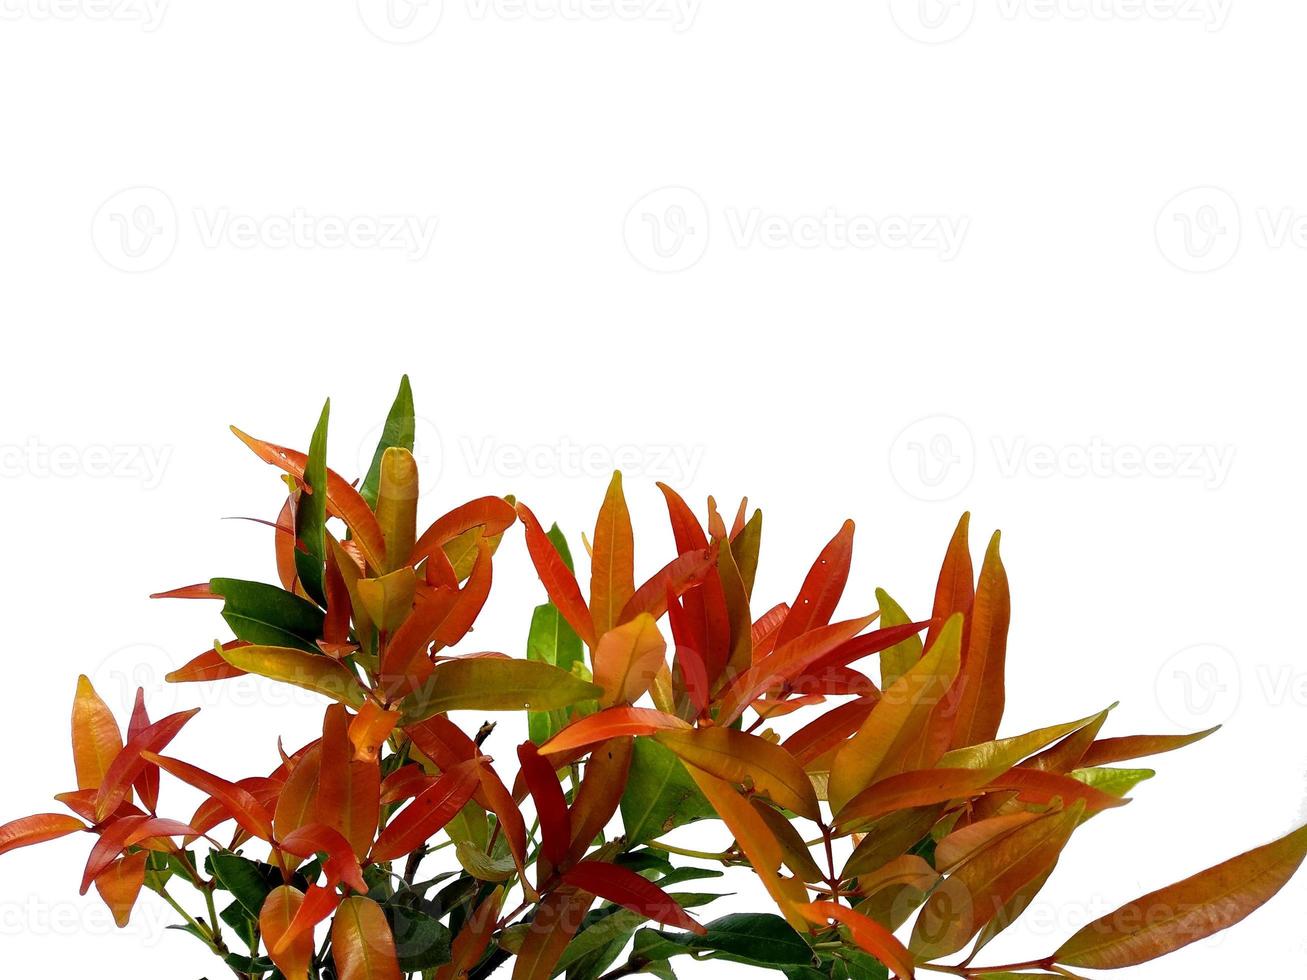 syzygium oleana blad på vit bakgrund foto